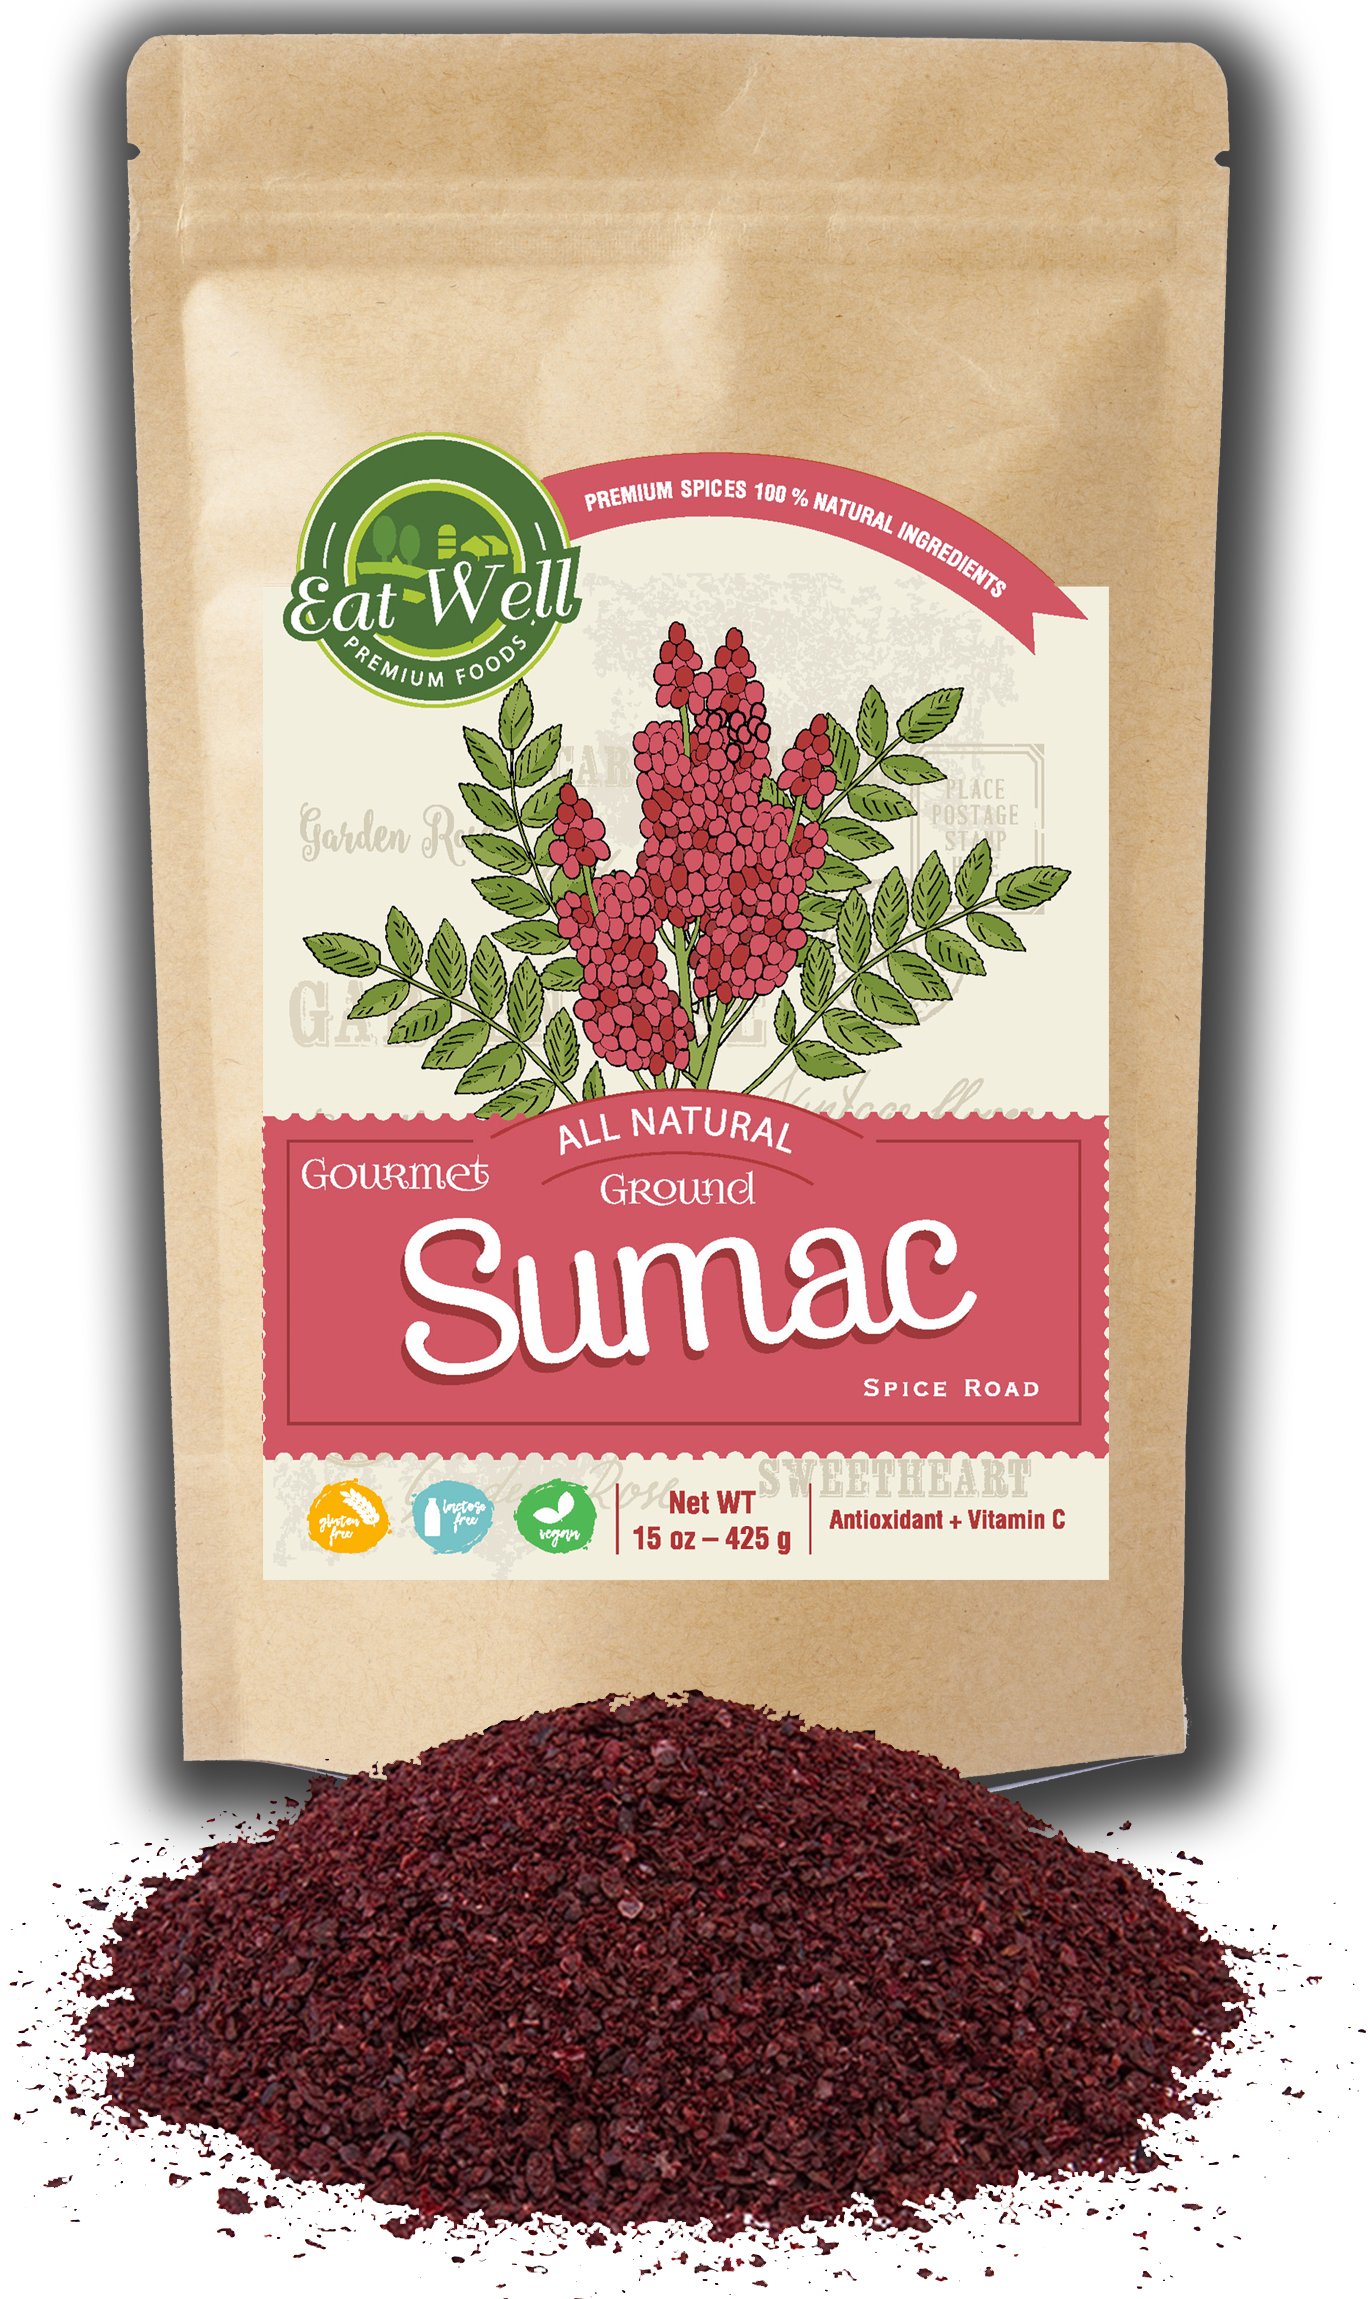 SPICES VILLAGE [ 8 oz ] Sumac Powder, Staghorn Ground Sumac Spice, Cured  Sumac Bran from Sumac Berries, Mediterranean Turkish Dried Sumac - Kosher